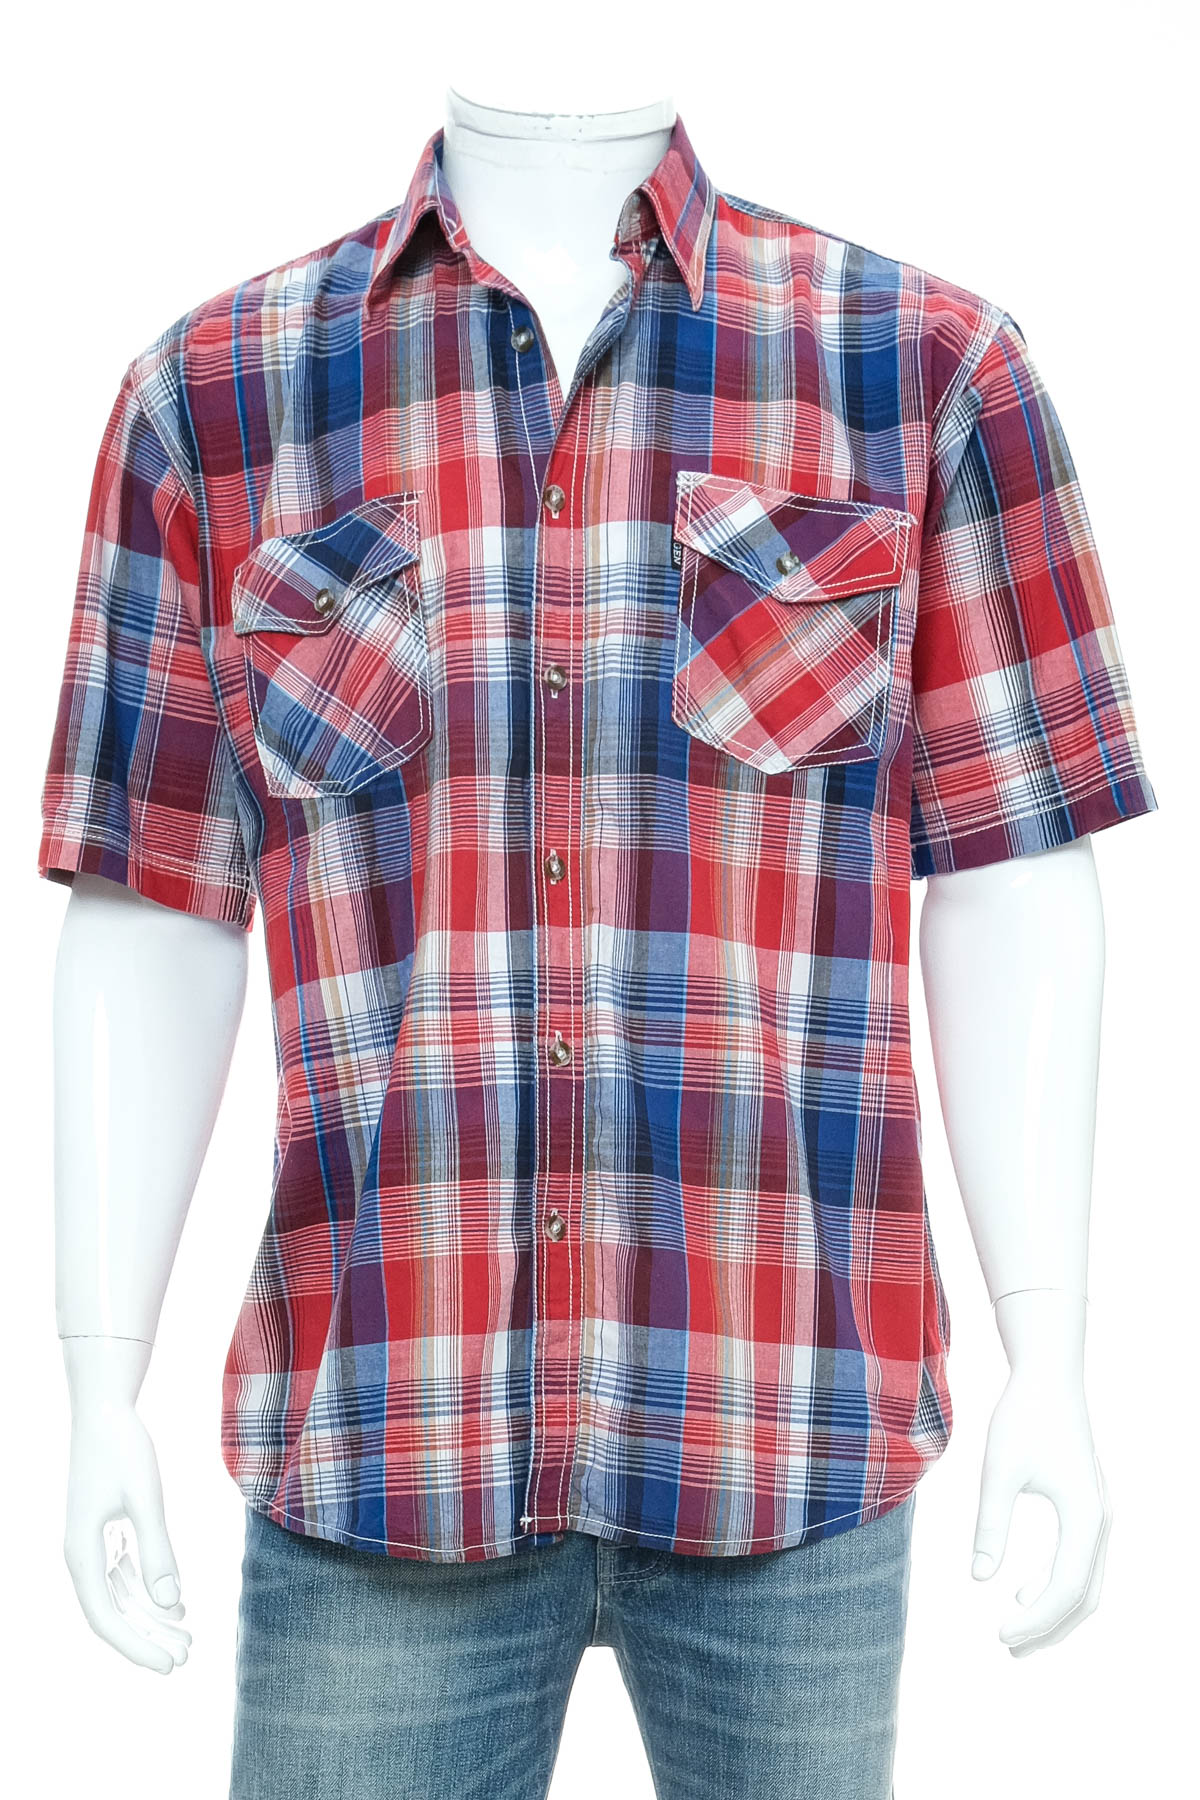 Ανδρικό πουκάμισο - Bygen Fashion - 0